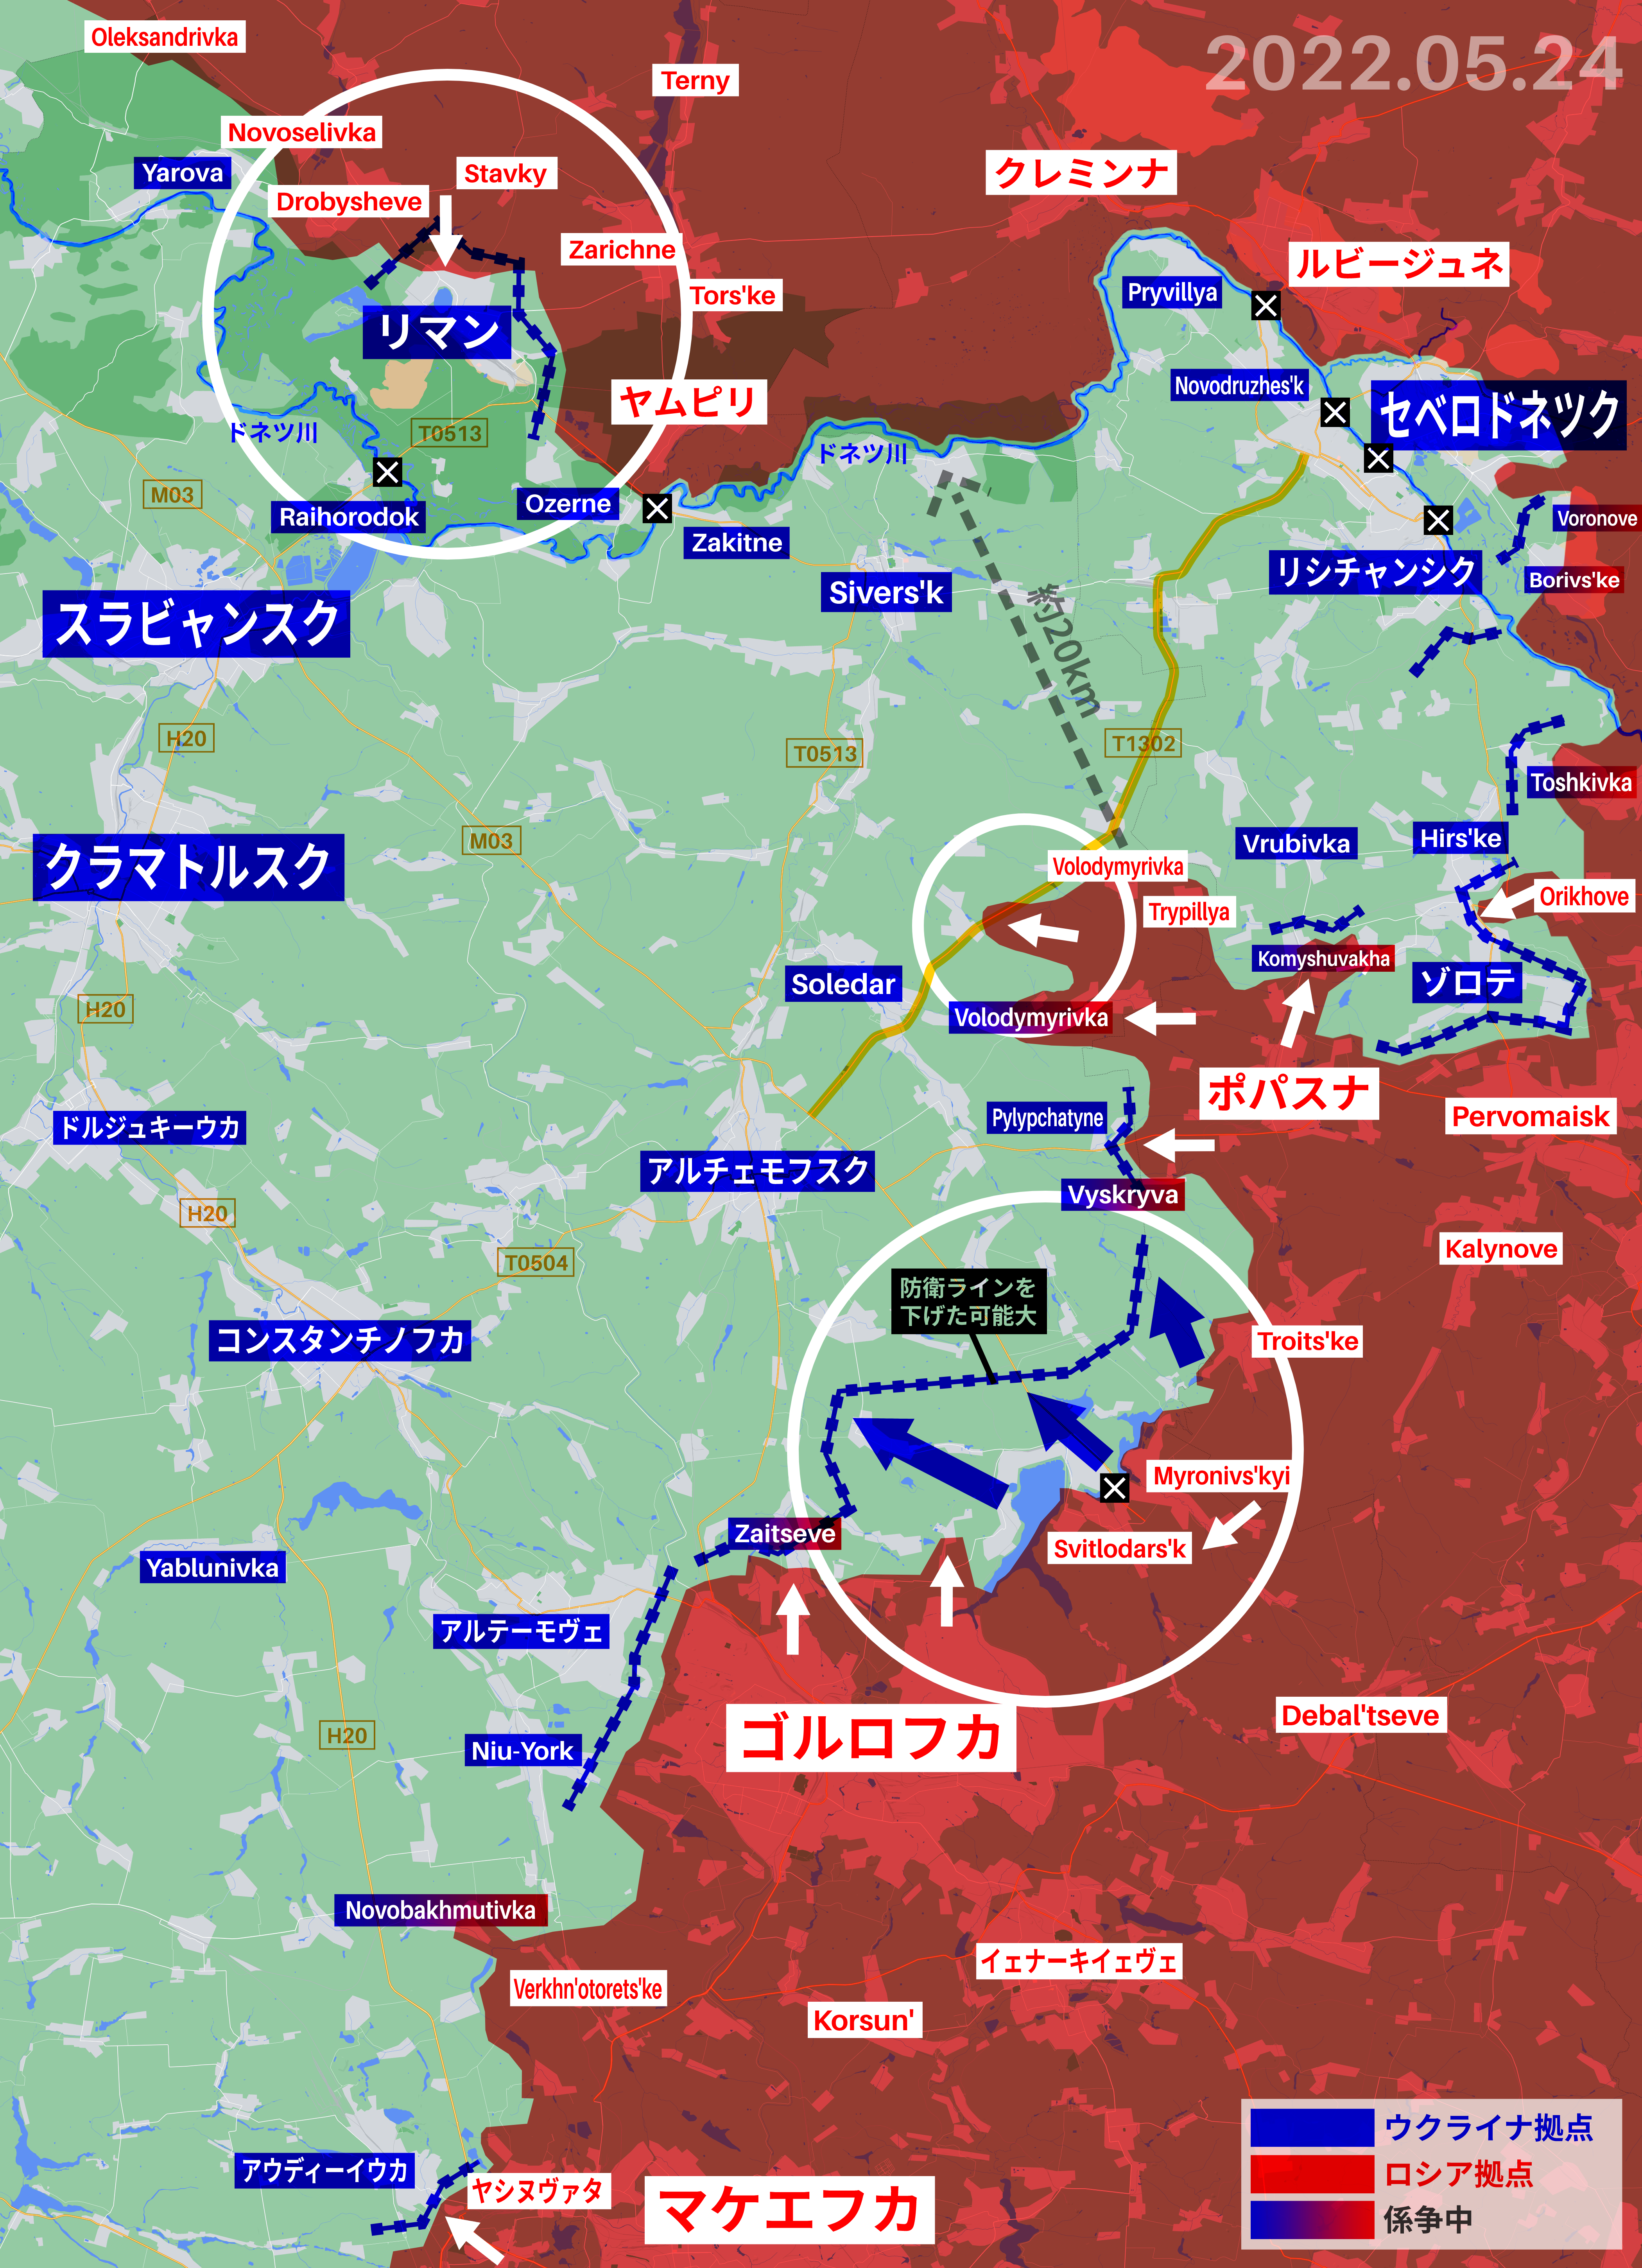 ロシア軍 ルハーンシク州で戦うウクライナ軍の補給ルート遮断に成功